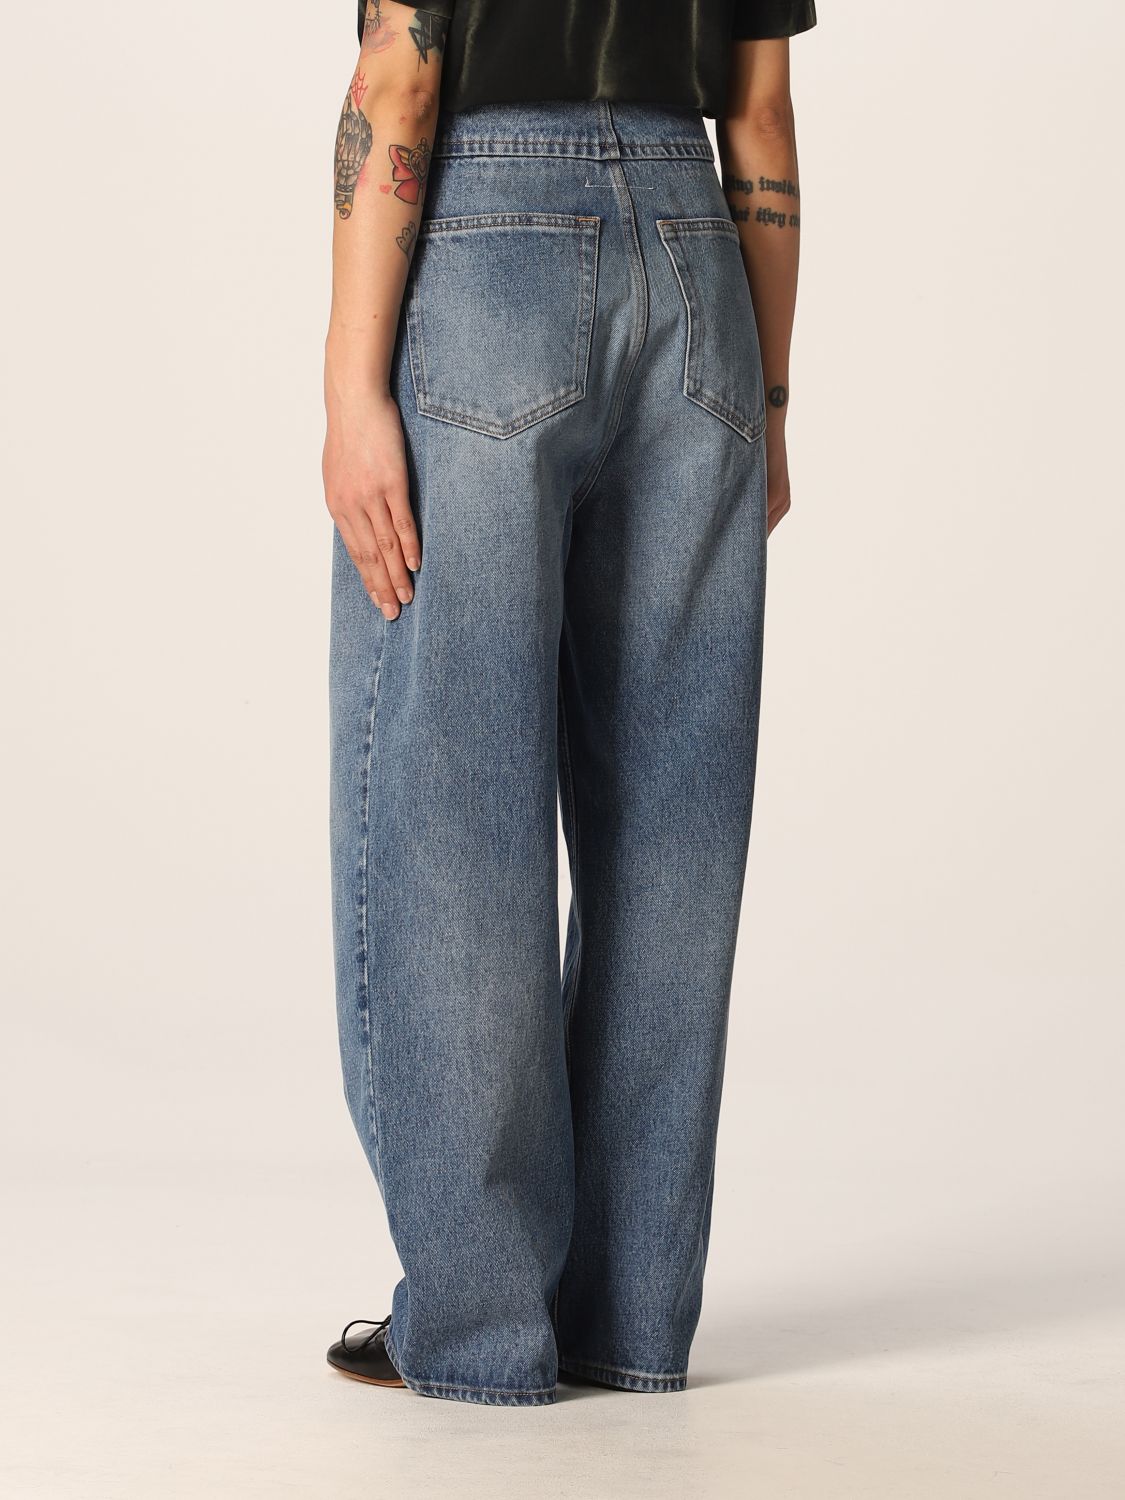 MM6 by Maison Martin Margiela Denim Hose mit weitem Bein in Natur Damen Bekleidung Jeans Ausgestellte Jeans 